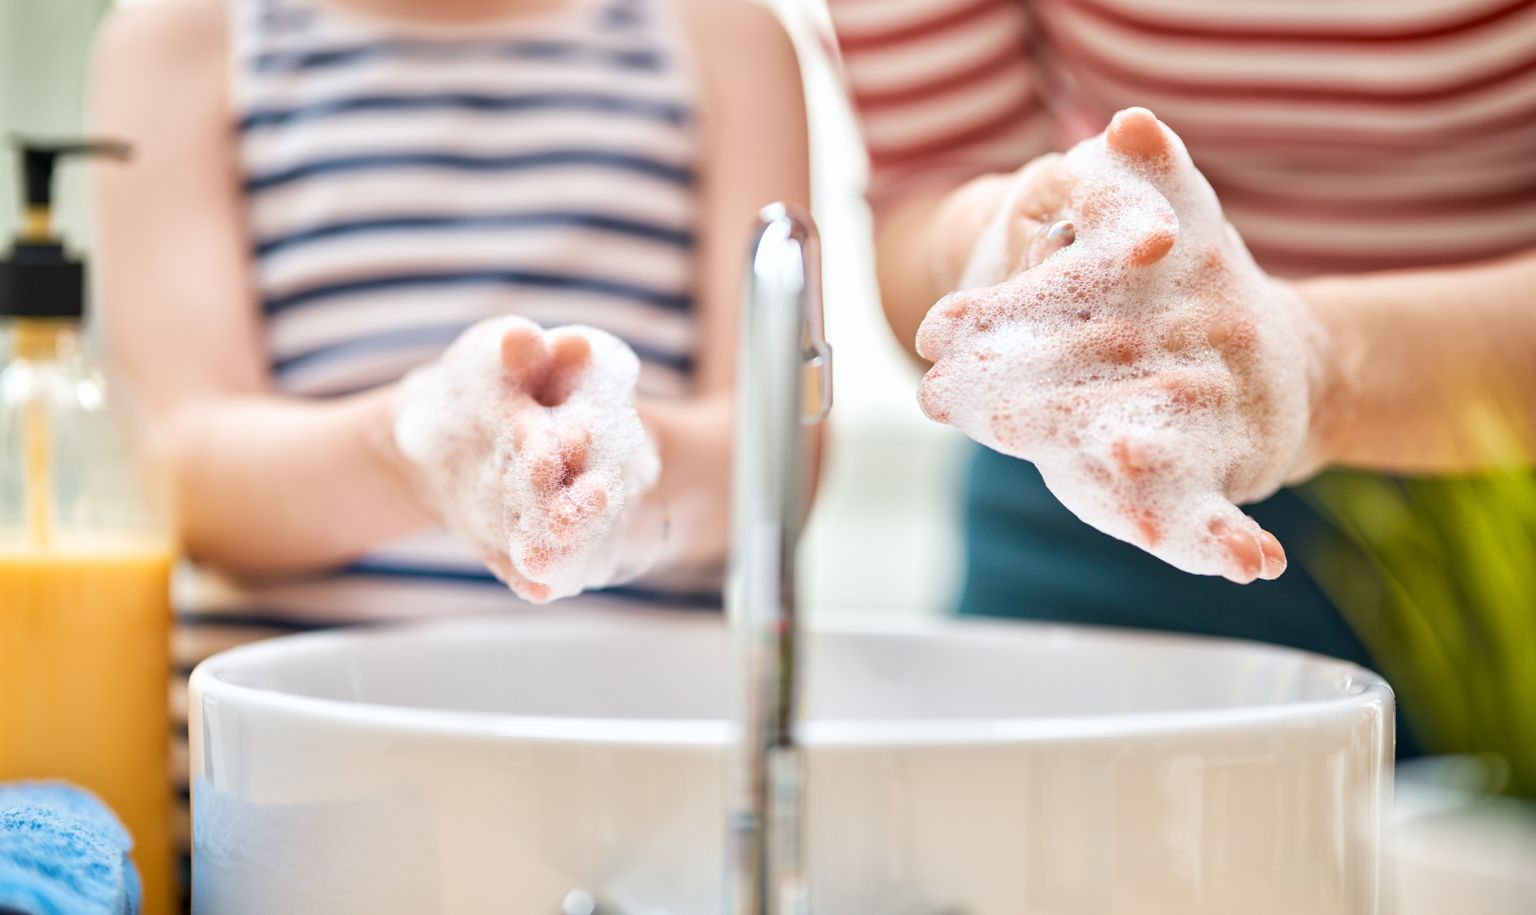 Viirustest hoidumise ABC: Pese käsi sooja vee ja seebiga kuni ühe minuti jooksul; aevastades või köhides kata oma suu ja nina varrukaga või pabertaskurätiga, mis viska pärast kohe prügikasti; ära puuduta silmi ega suud sõrmedega, et pisikud ei satuks organismi; väldi rahvarohkeid kogunemisi ja lähikontakti võõraste inimestega; vajaduse korral kanna enda ja teiste kaitseks maski; söö täisväärtuslikku toitu ja joo puhast vett.